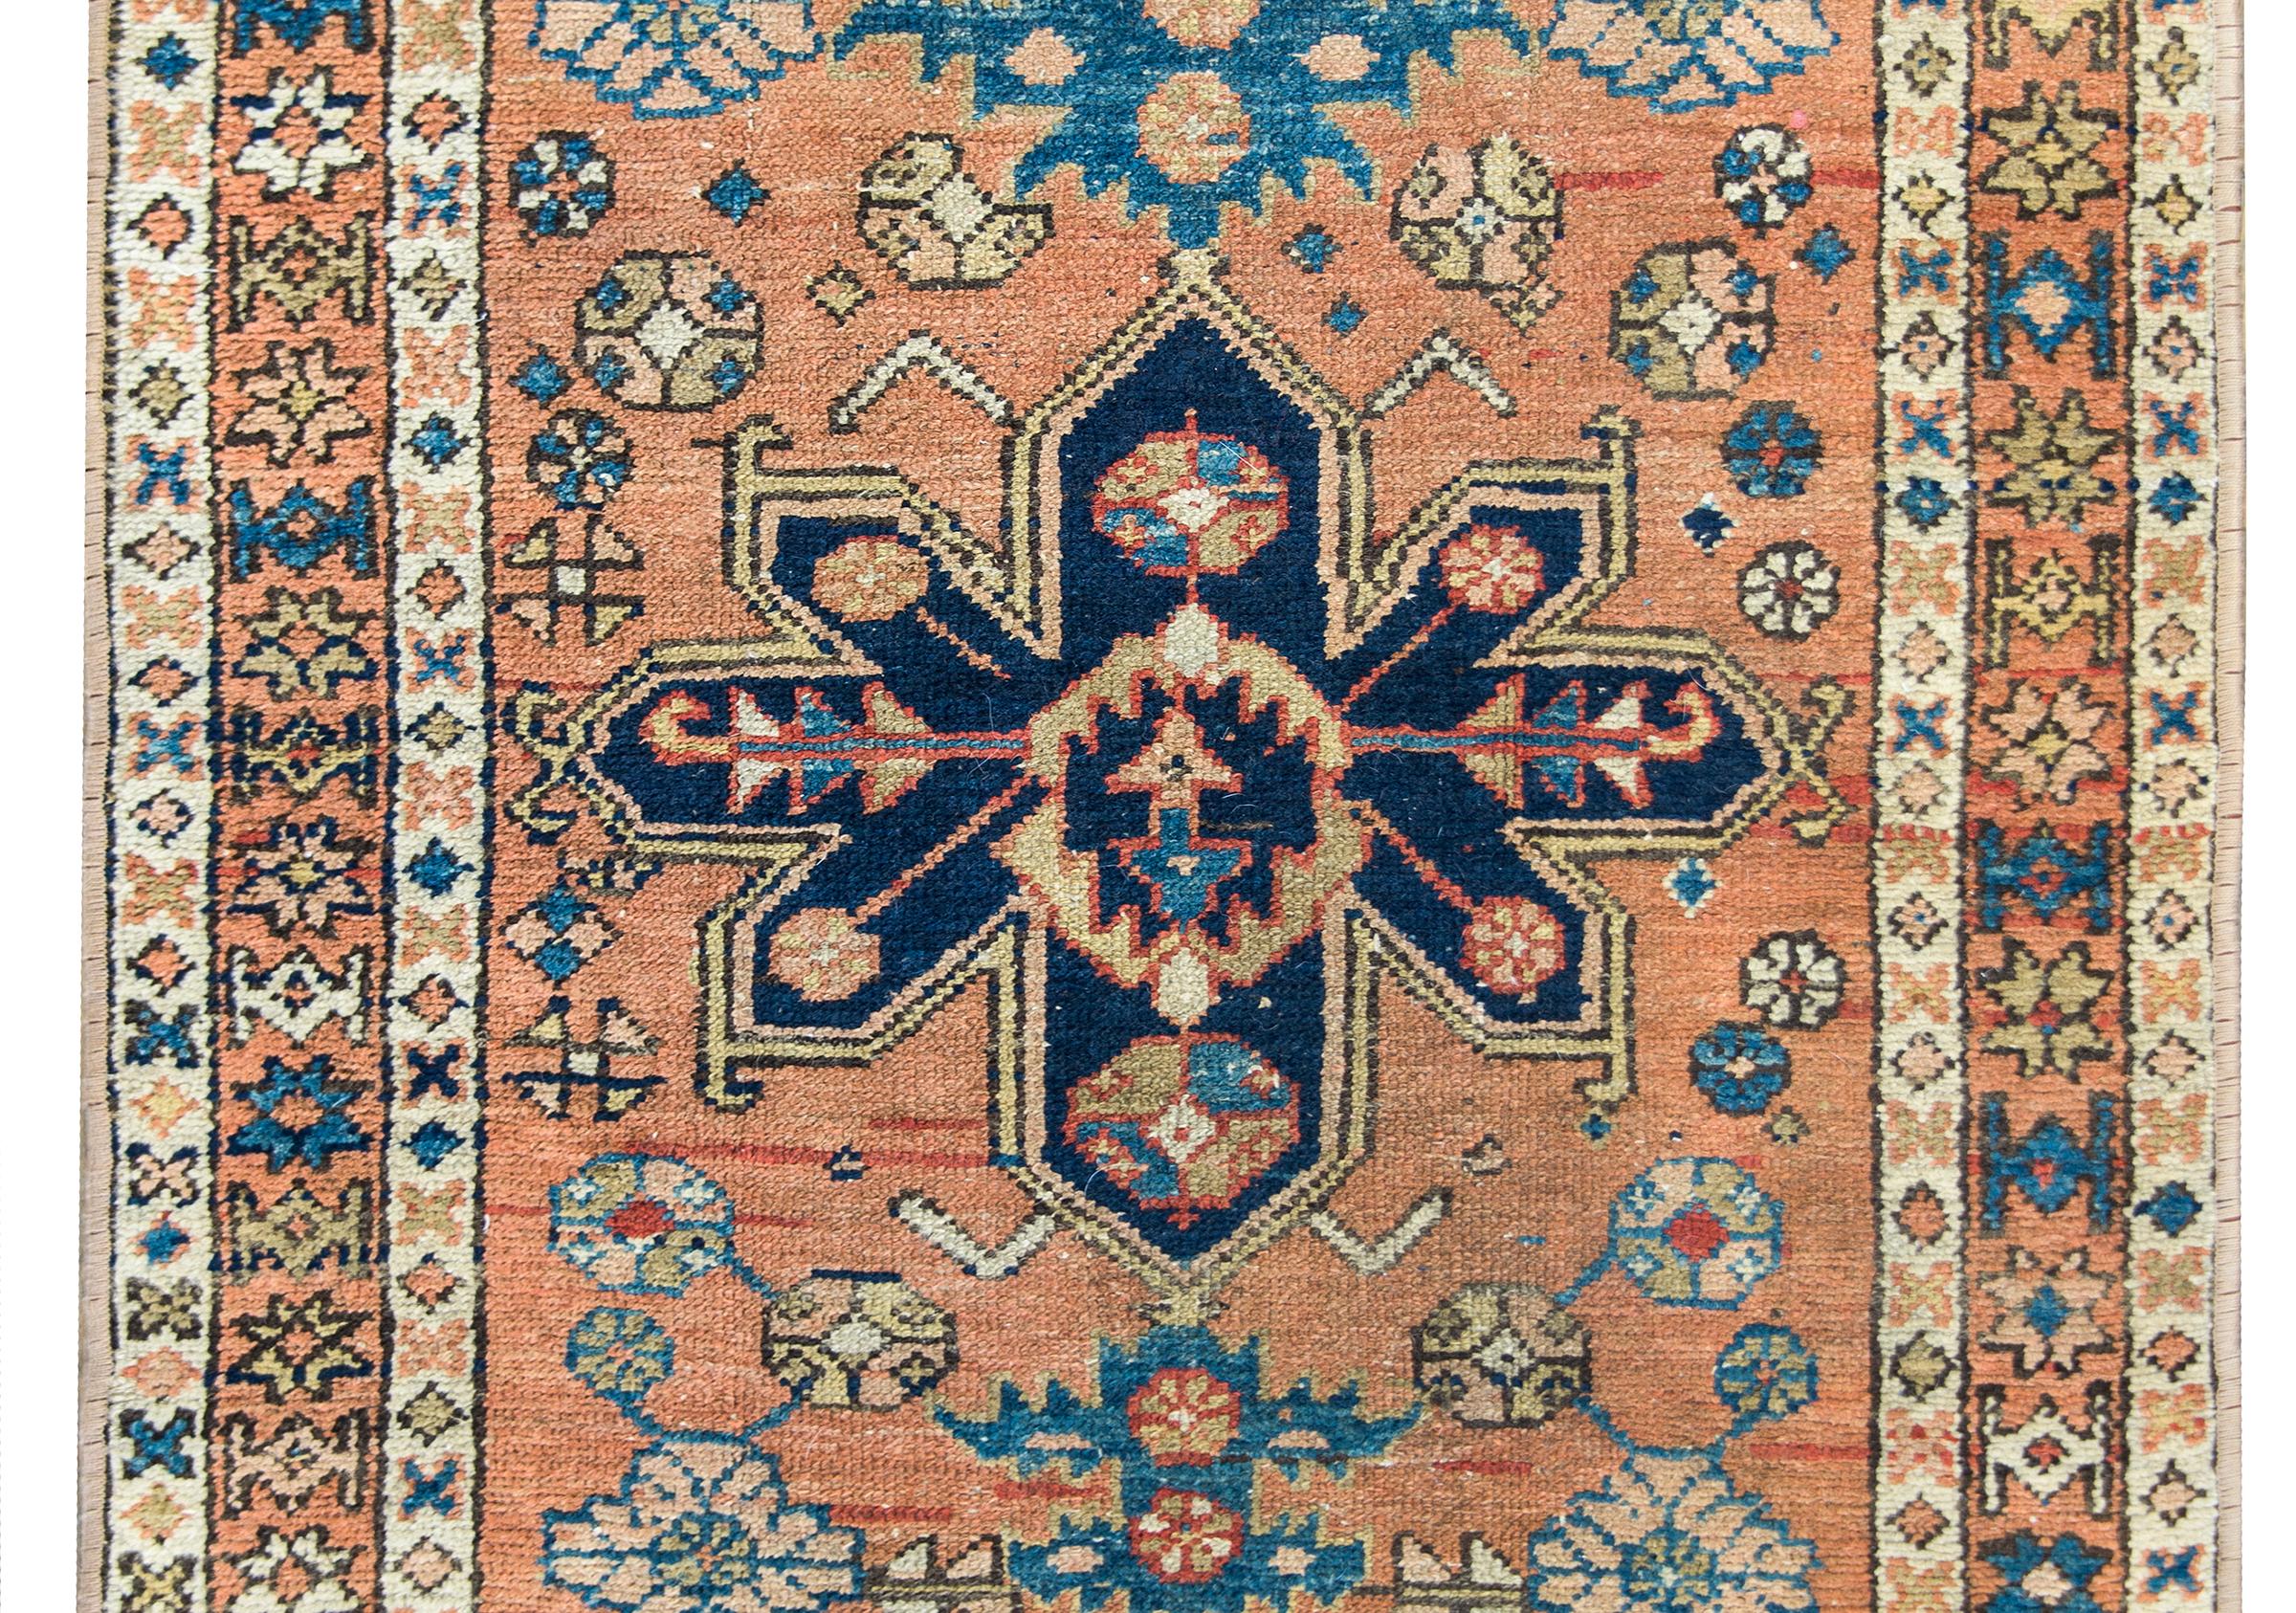 Ein schöner persischer Karadscha-Teppich aus dem frühen 20. Jahrhundert mit einem stilisierten Blumenmedaillon inmitten eines Feldes aus stilisierten Blumen und Blättern, umgeben von einer einfachen Bordüre aus zierlichen, sich wiederholenden